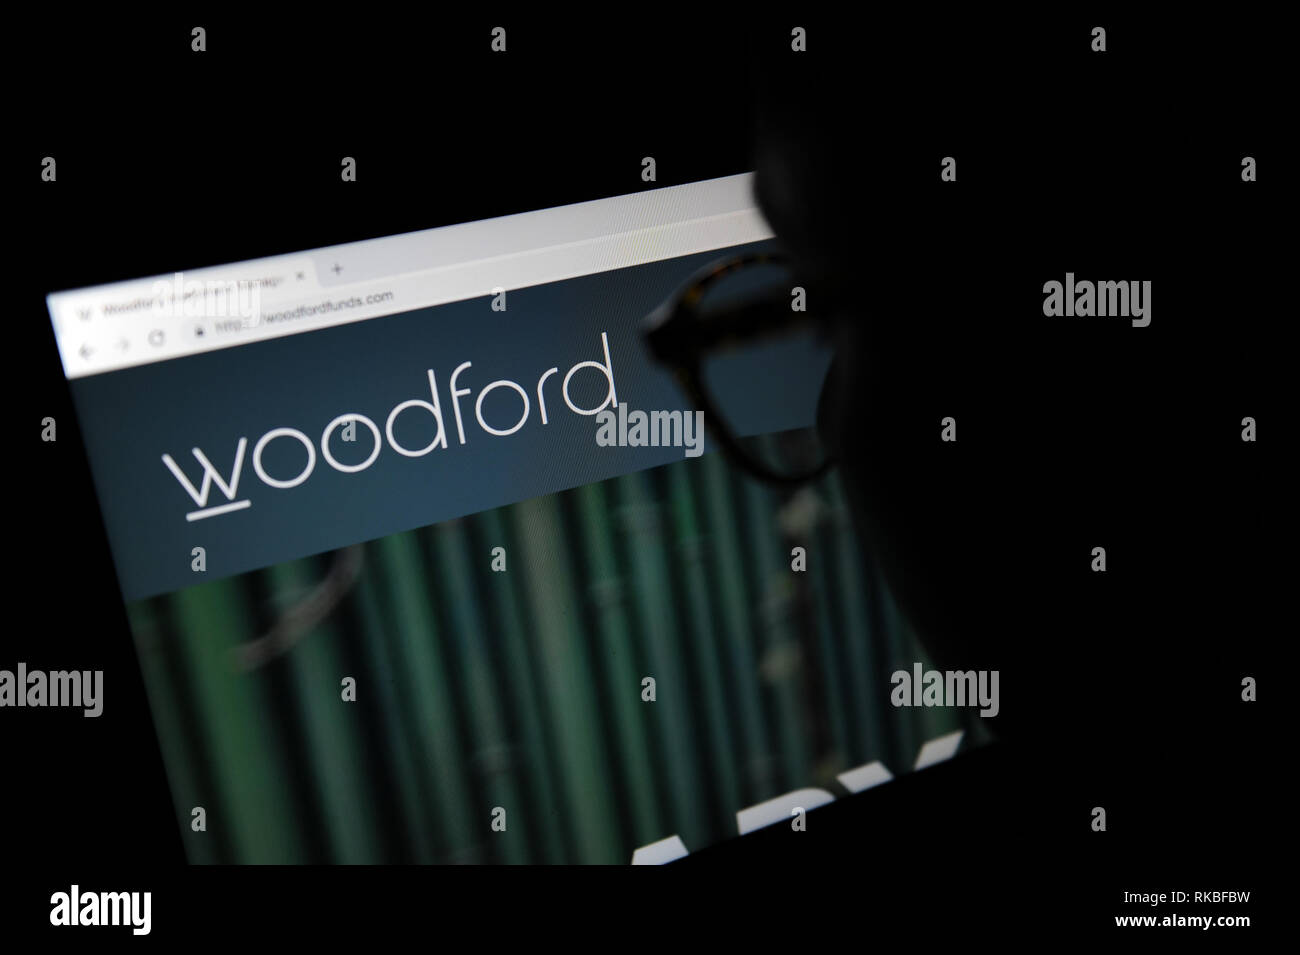 Site web de fonds Woodford vu à travers une loupe Banque D'Images